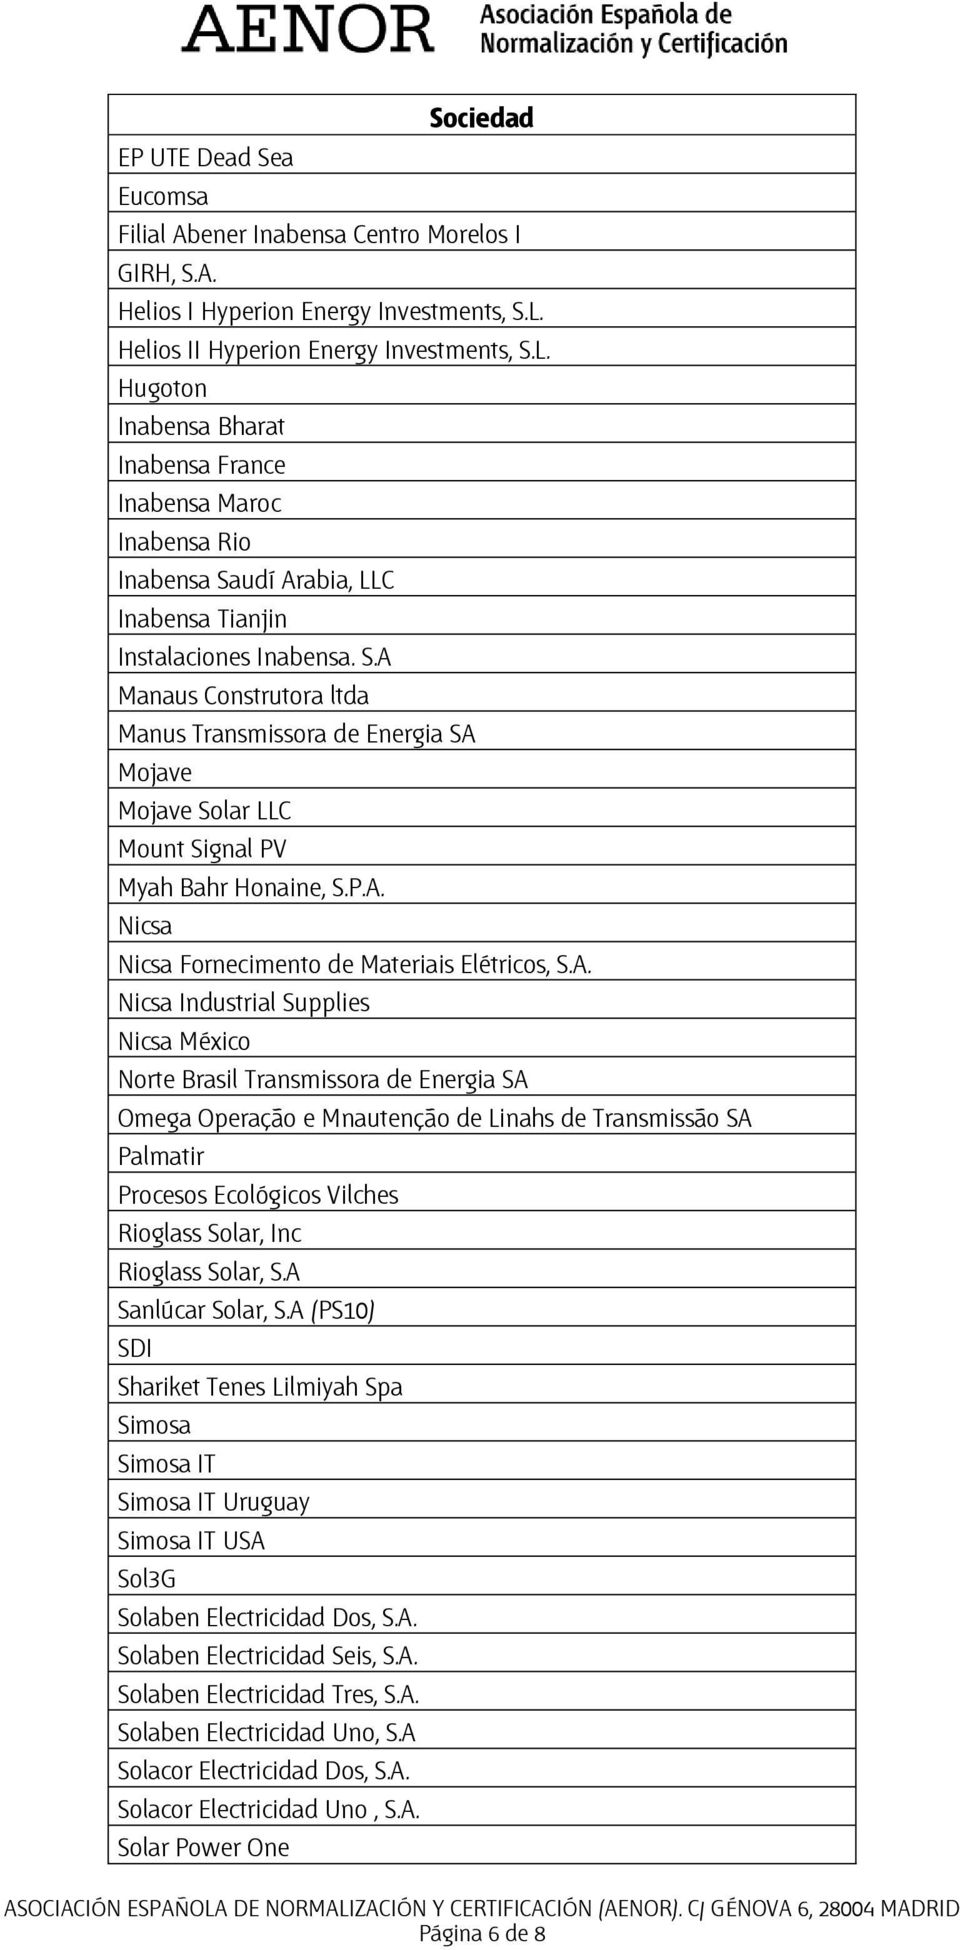 P.A. Nicsa Nicsa Fornecimento de Materiais Elétricos, S.A. Nicsa Industrial Supplies Nicsa México Norte Brasil Transmissora de Energia SA Omega Operação e Mnautenção de Linahs de Transmissão SA